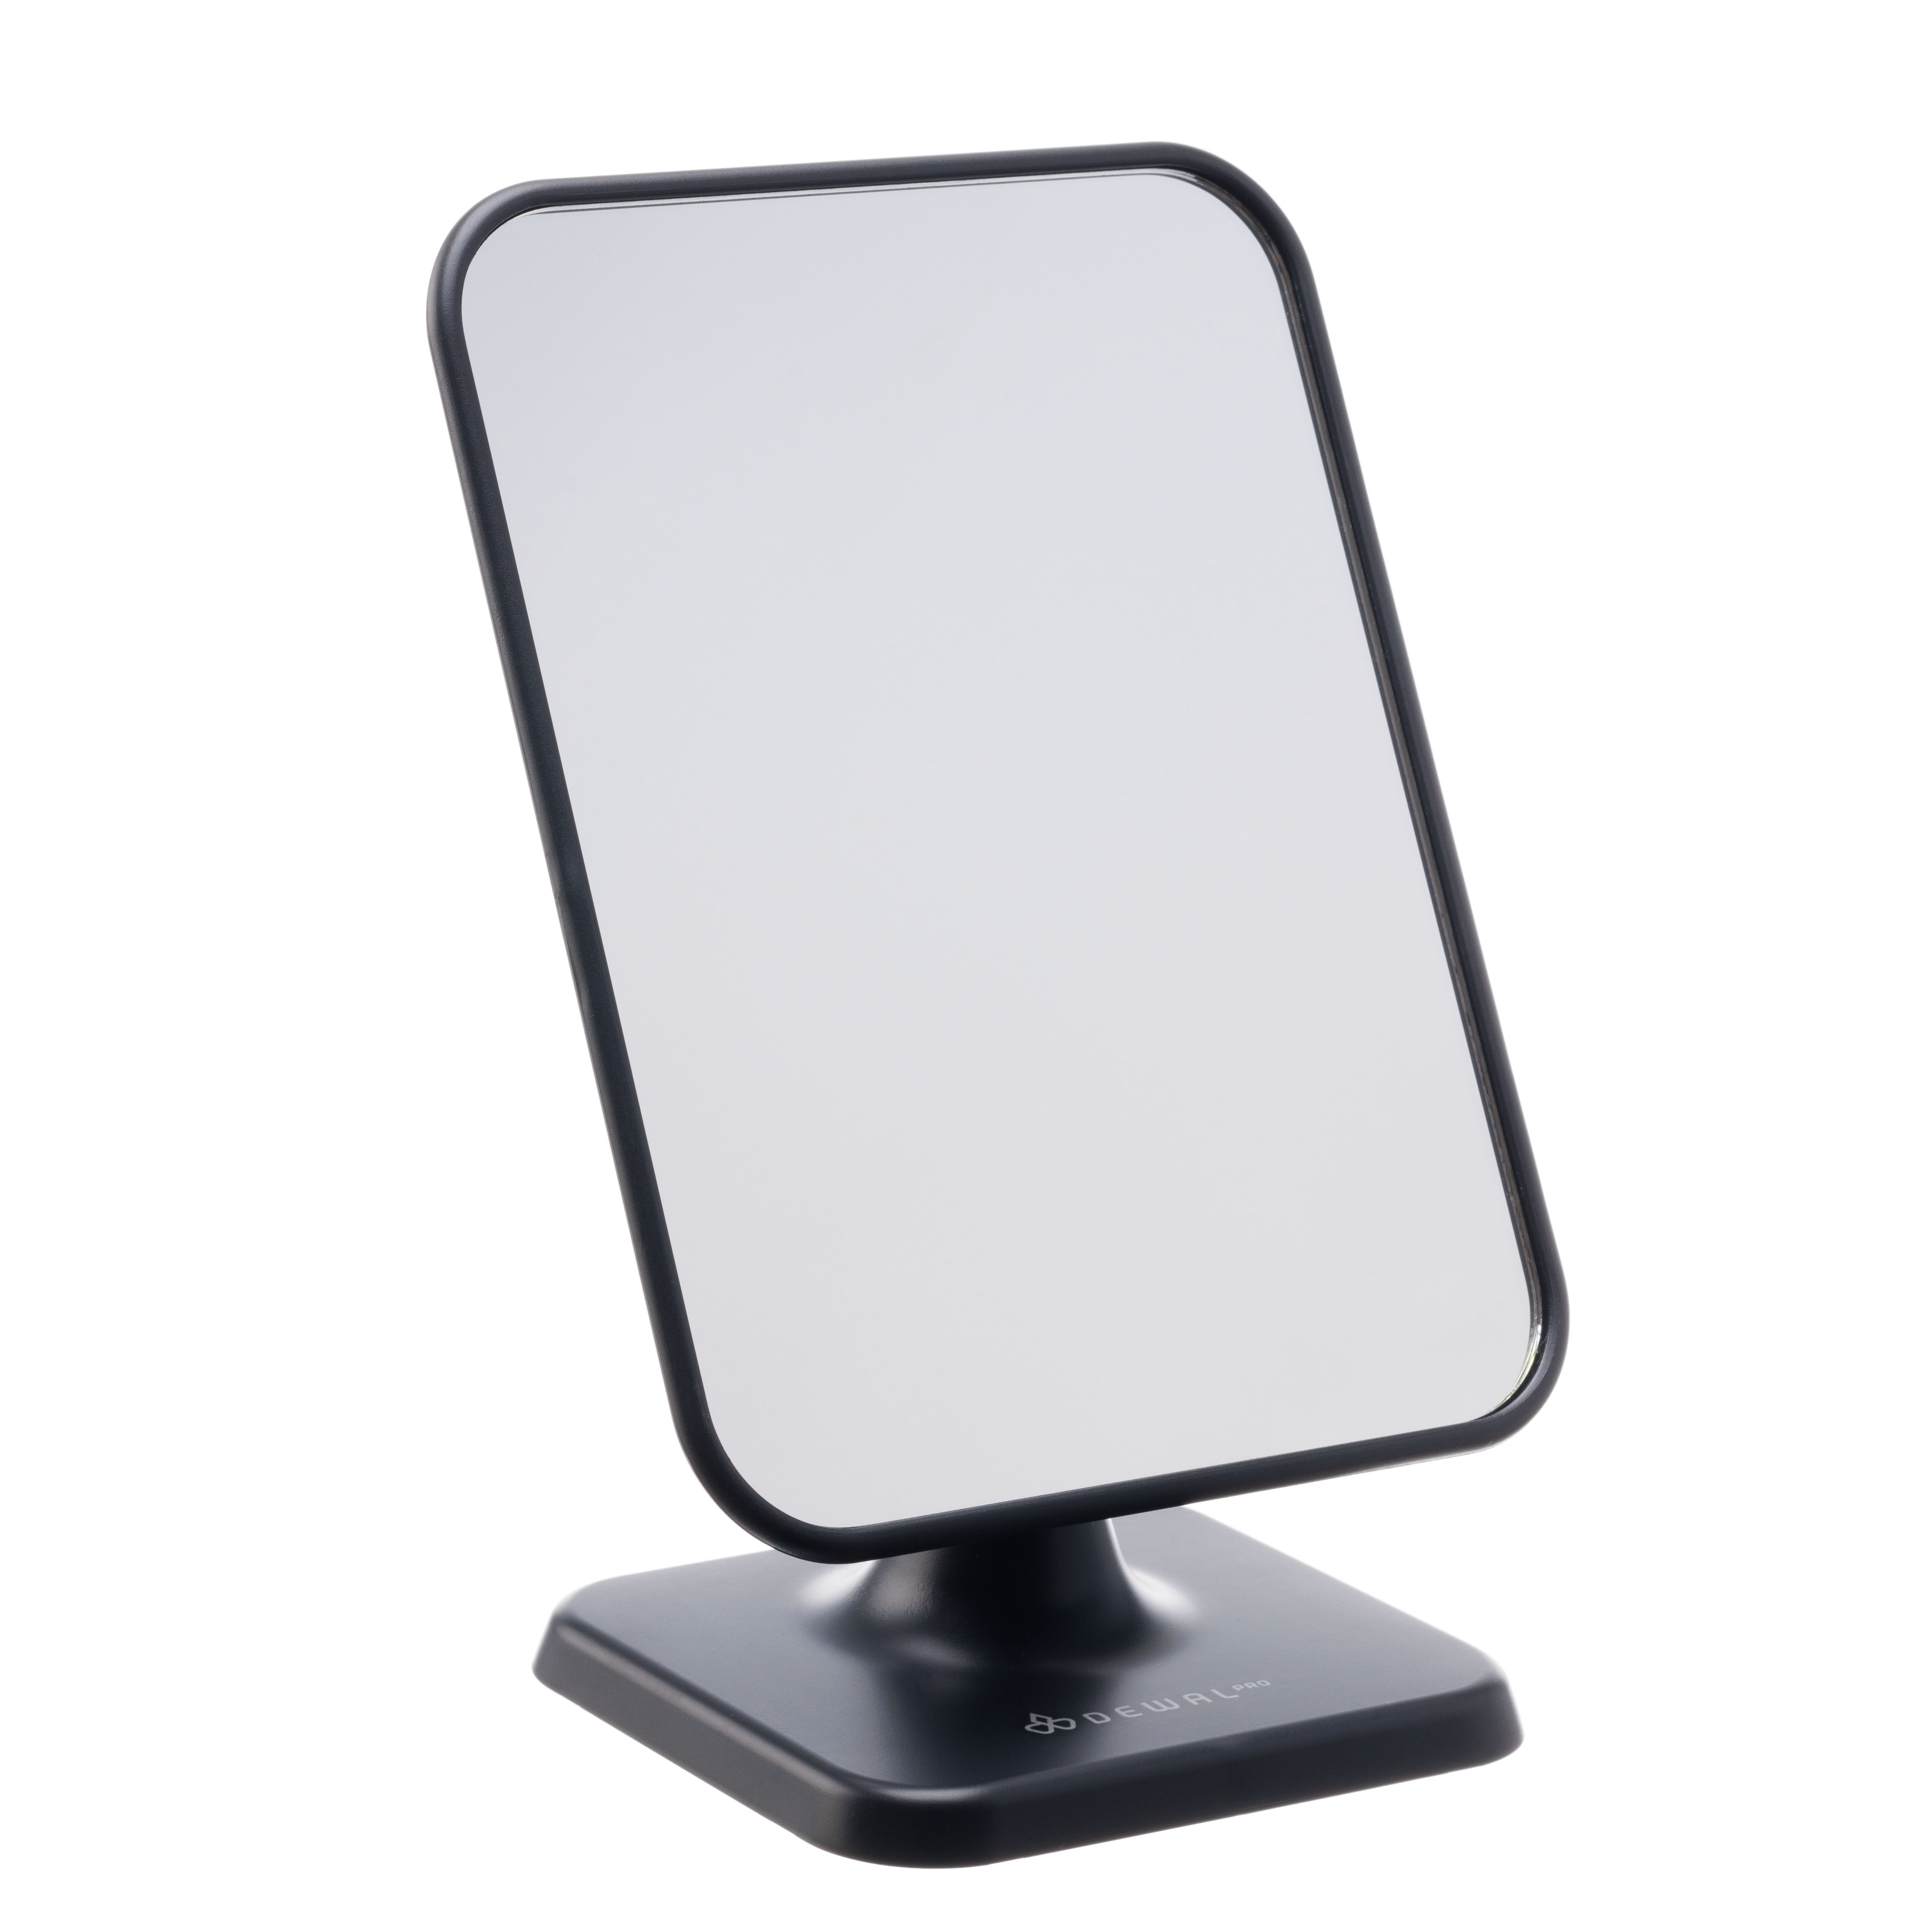 Зеркало настольное прямоугольное DEWAL deco зеркало для макияжа настольное с подставкой для телефона